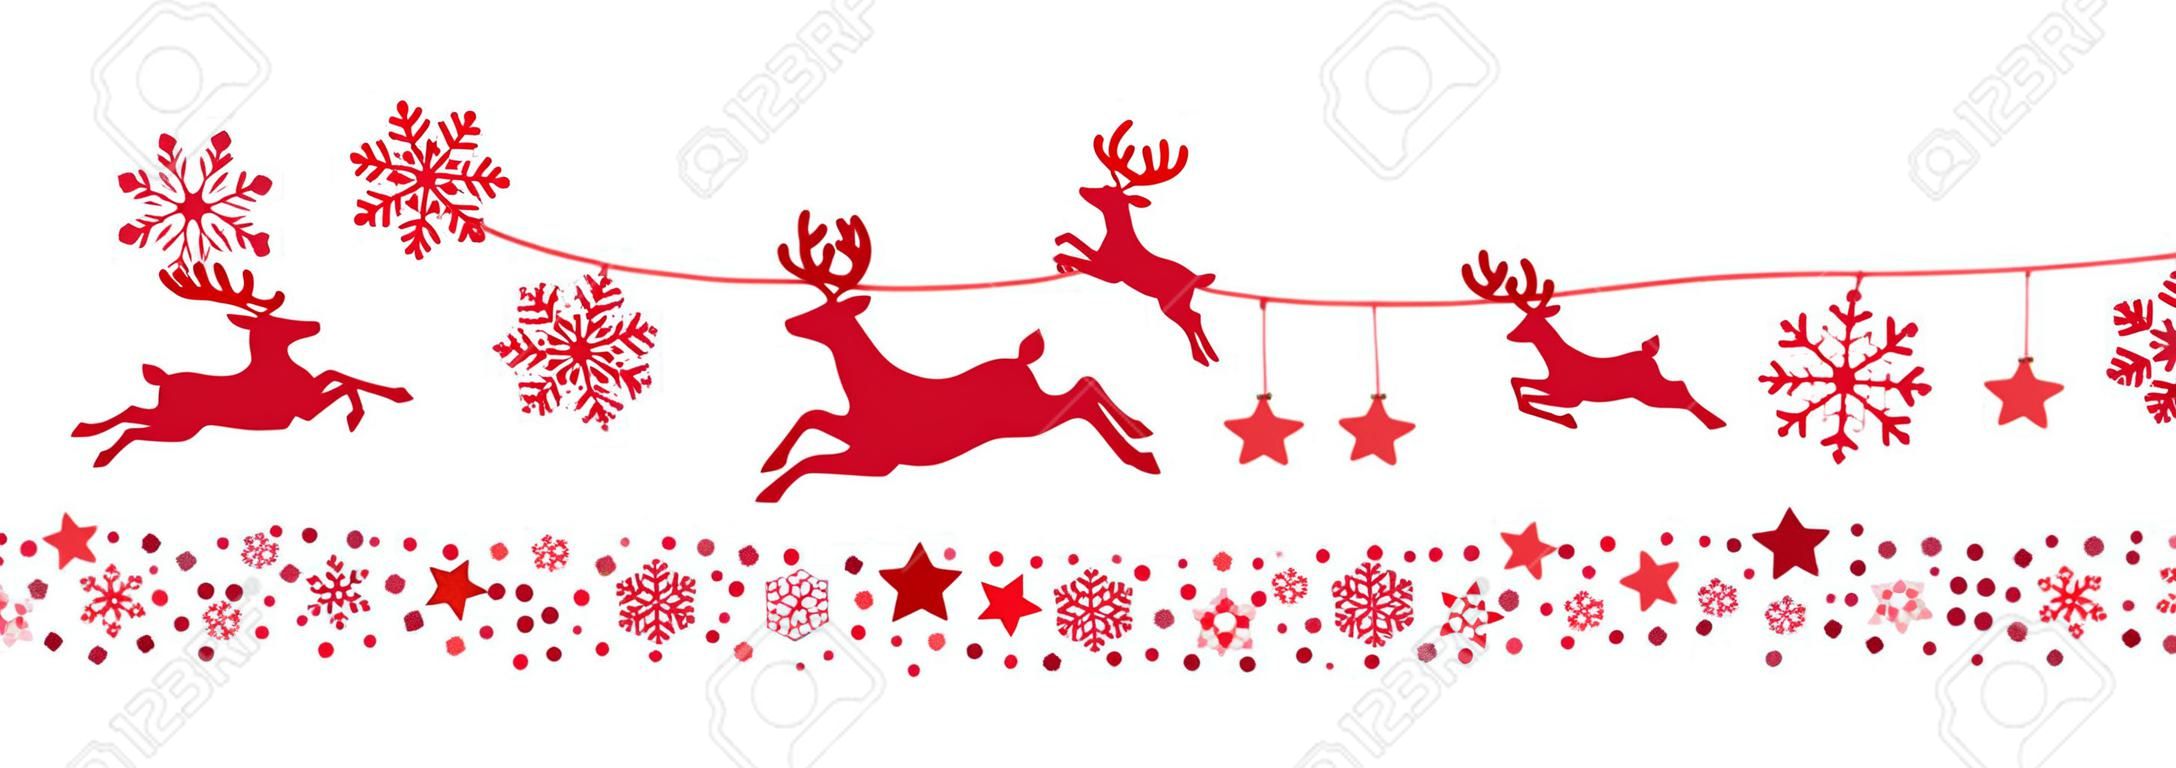 flocons de neige de Santa traîneau de rennes volants silhouette rouge